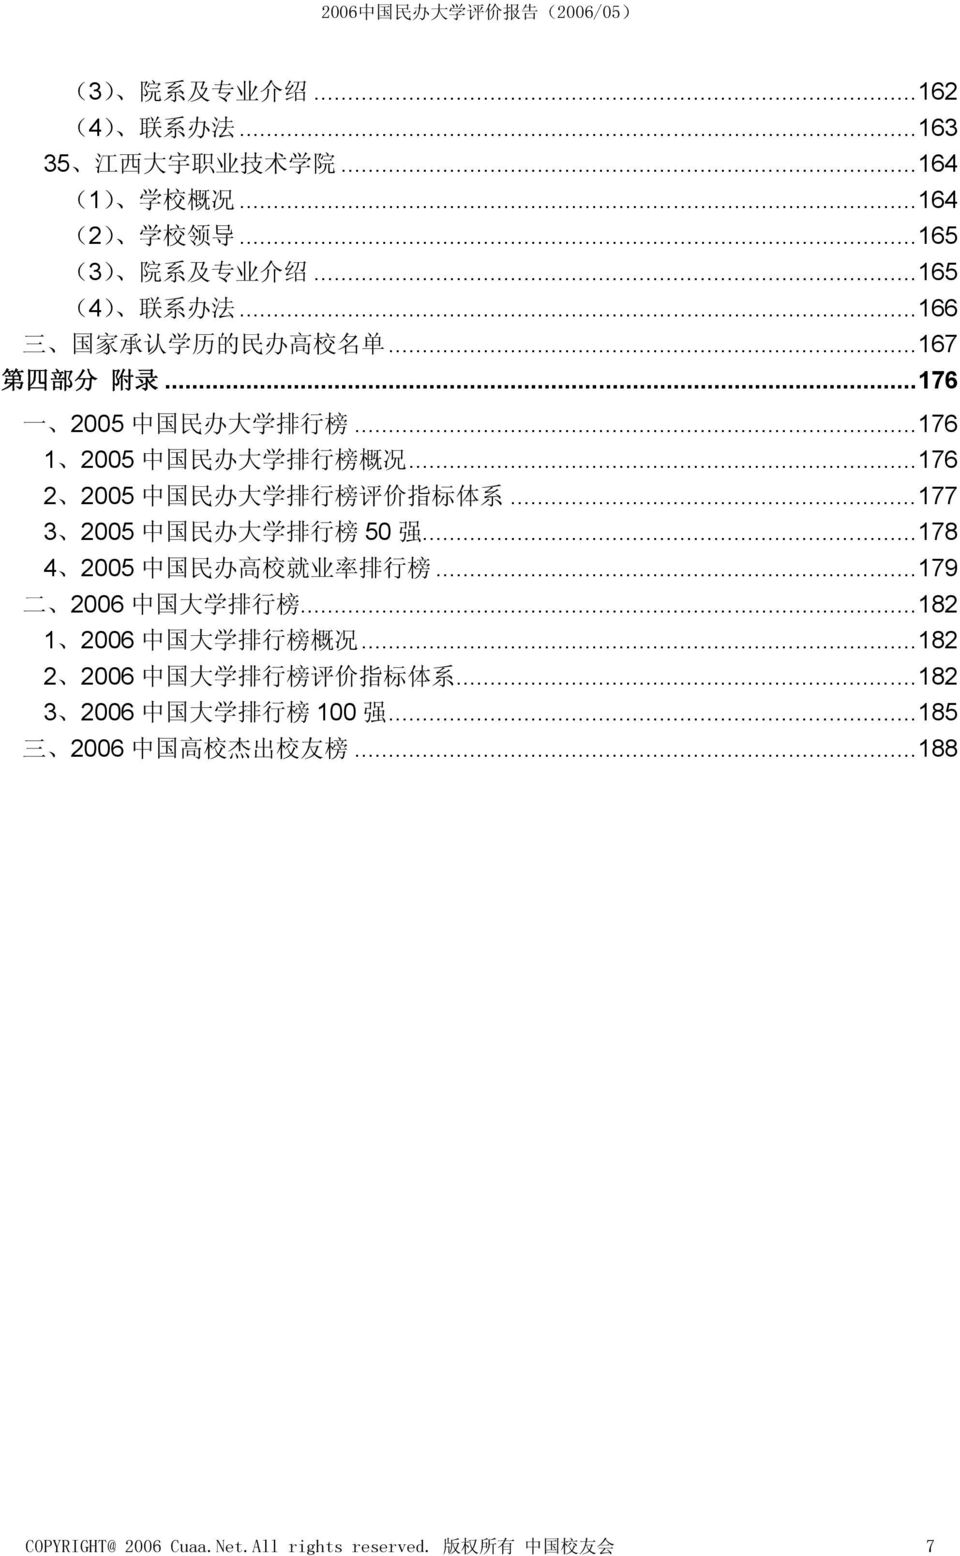 ..176 2 2005 中 国 民 办 大 学 排 行 榜 评 价 指 标 体 系...177 3 2005 中 国 民 办 大 学 排 行 榜 50 强...178 4 2005 中 国 民 办 高 校 就 业 率 排 行 榜...179 二 2006 中 国 大 学 排 行 榜.